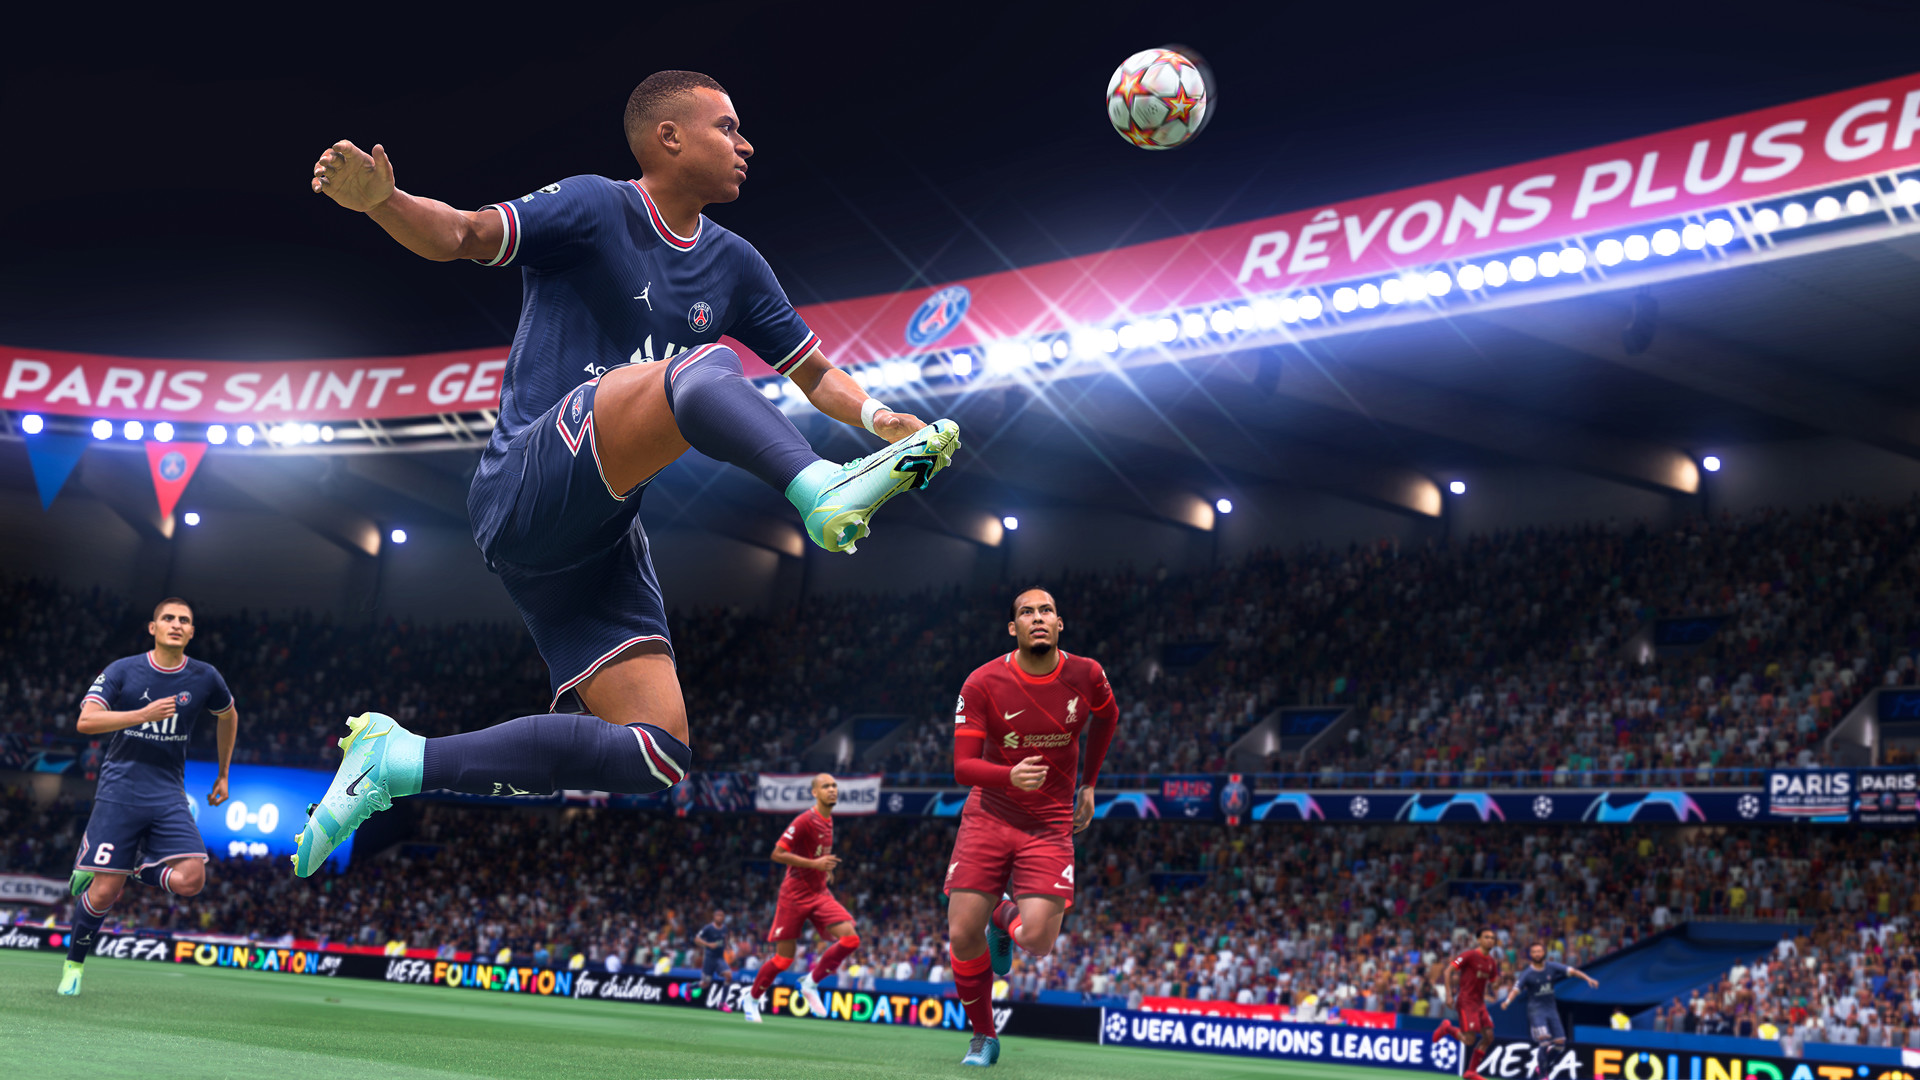 Перемещения и действия футболистов в новой FIFA 23 станут еще более реалистичными благодаря особой технологии, которую применили разработчики. В процессе обновления &laquo;движка&raquo; симулятора они нарядили реальных игроков в специальные костюмы и попросили поиграть на камеру.